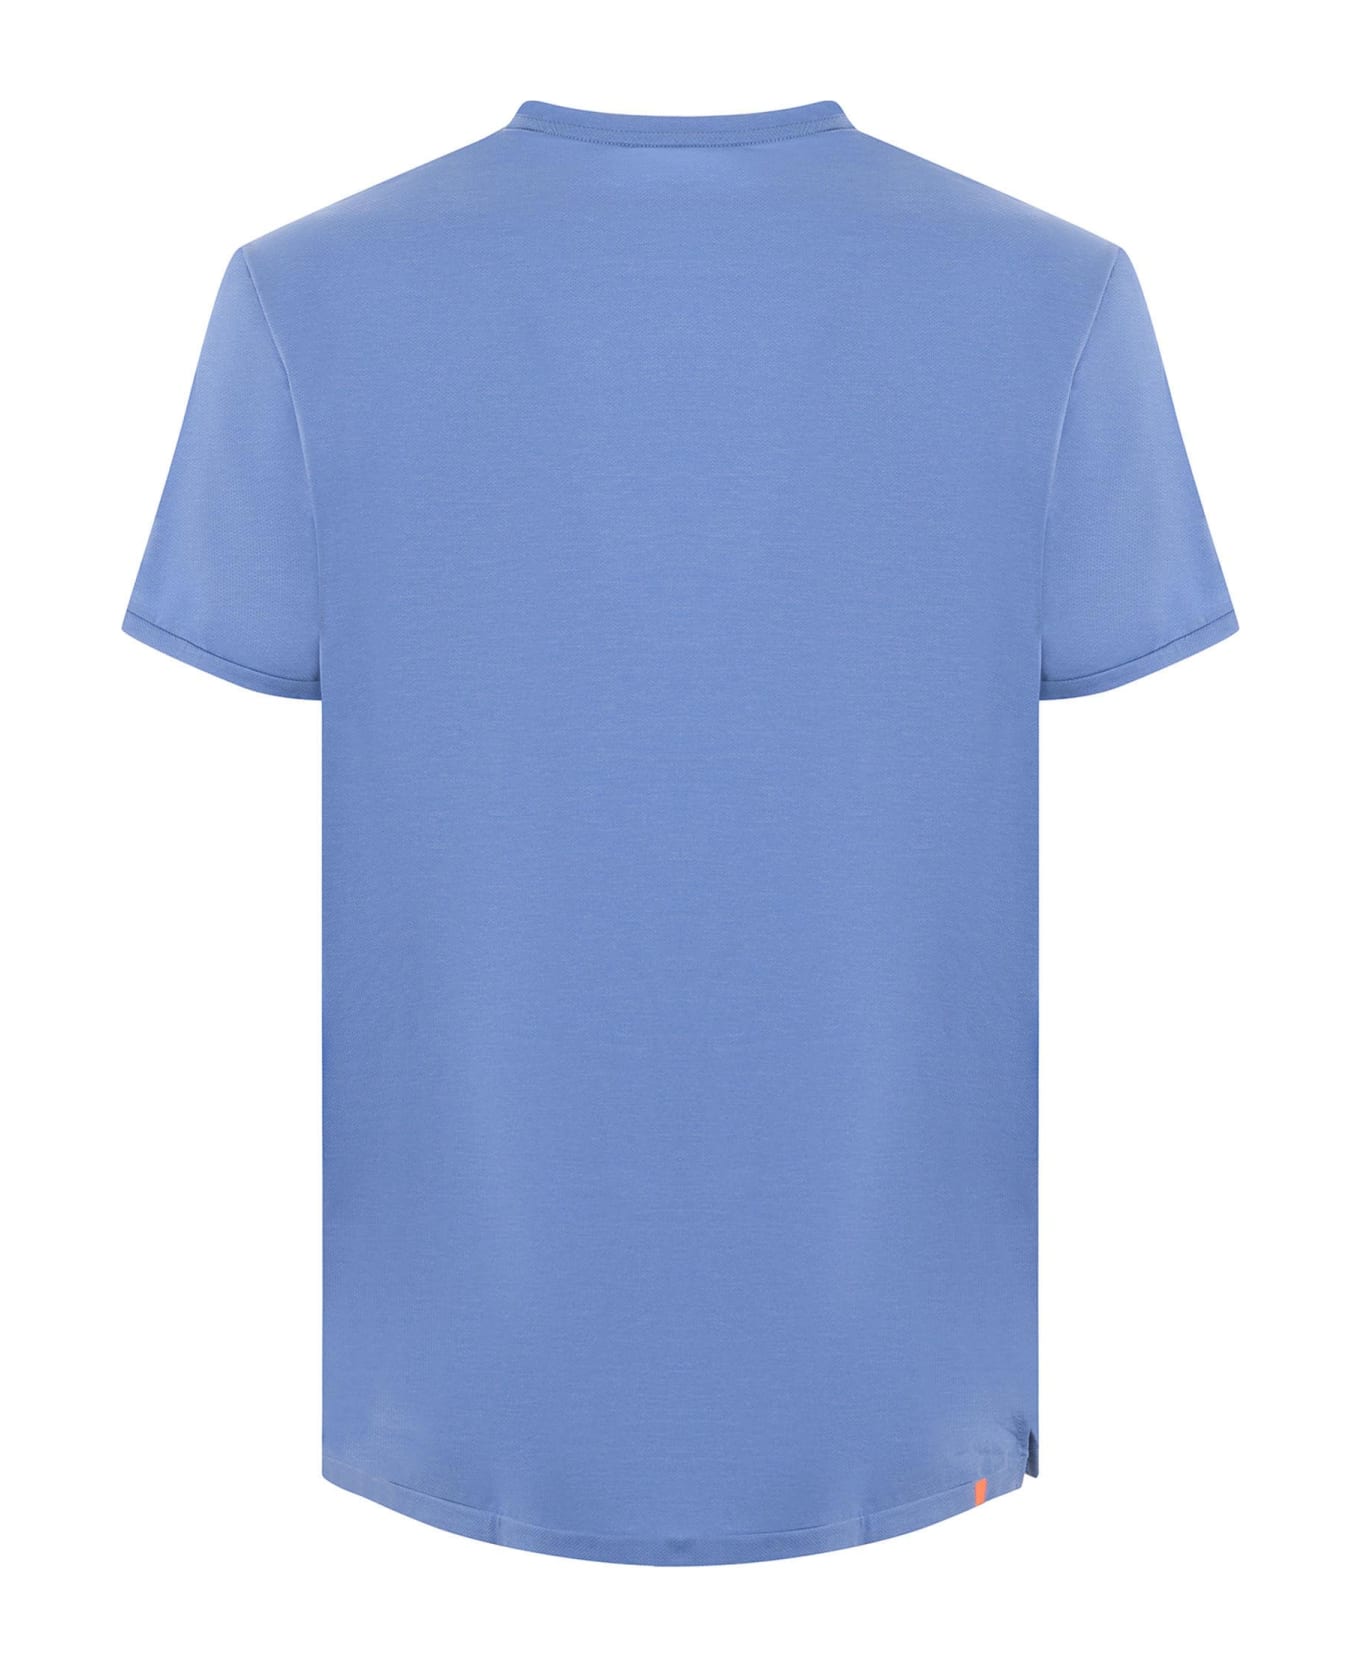 RRD - Roberto Ricci Design 'summer Smart' T-shirt - LIGHT BLUE